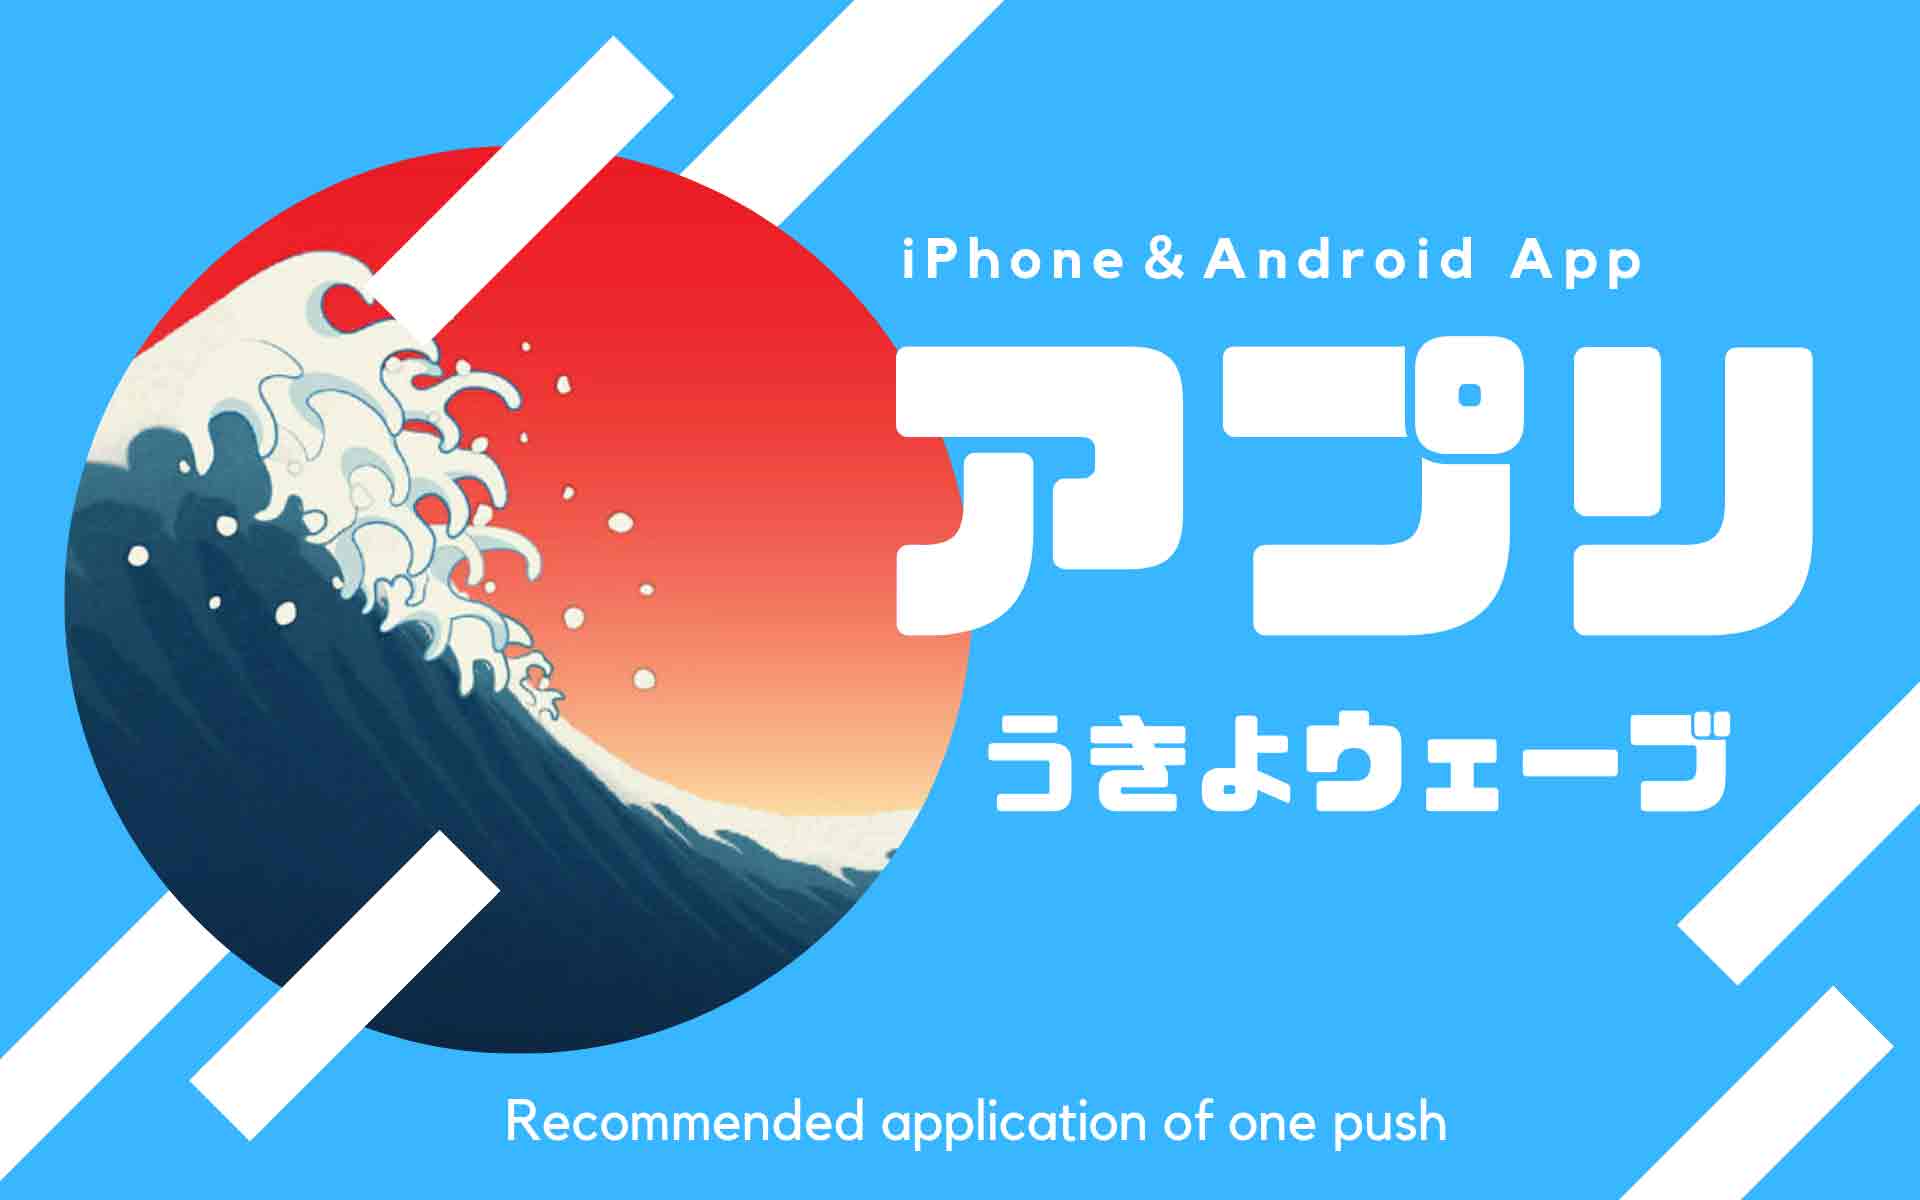 iPhone-Android-app-ukiyowave-image